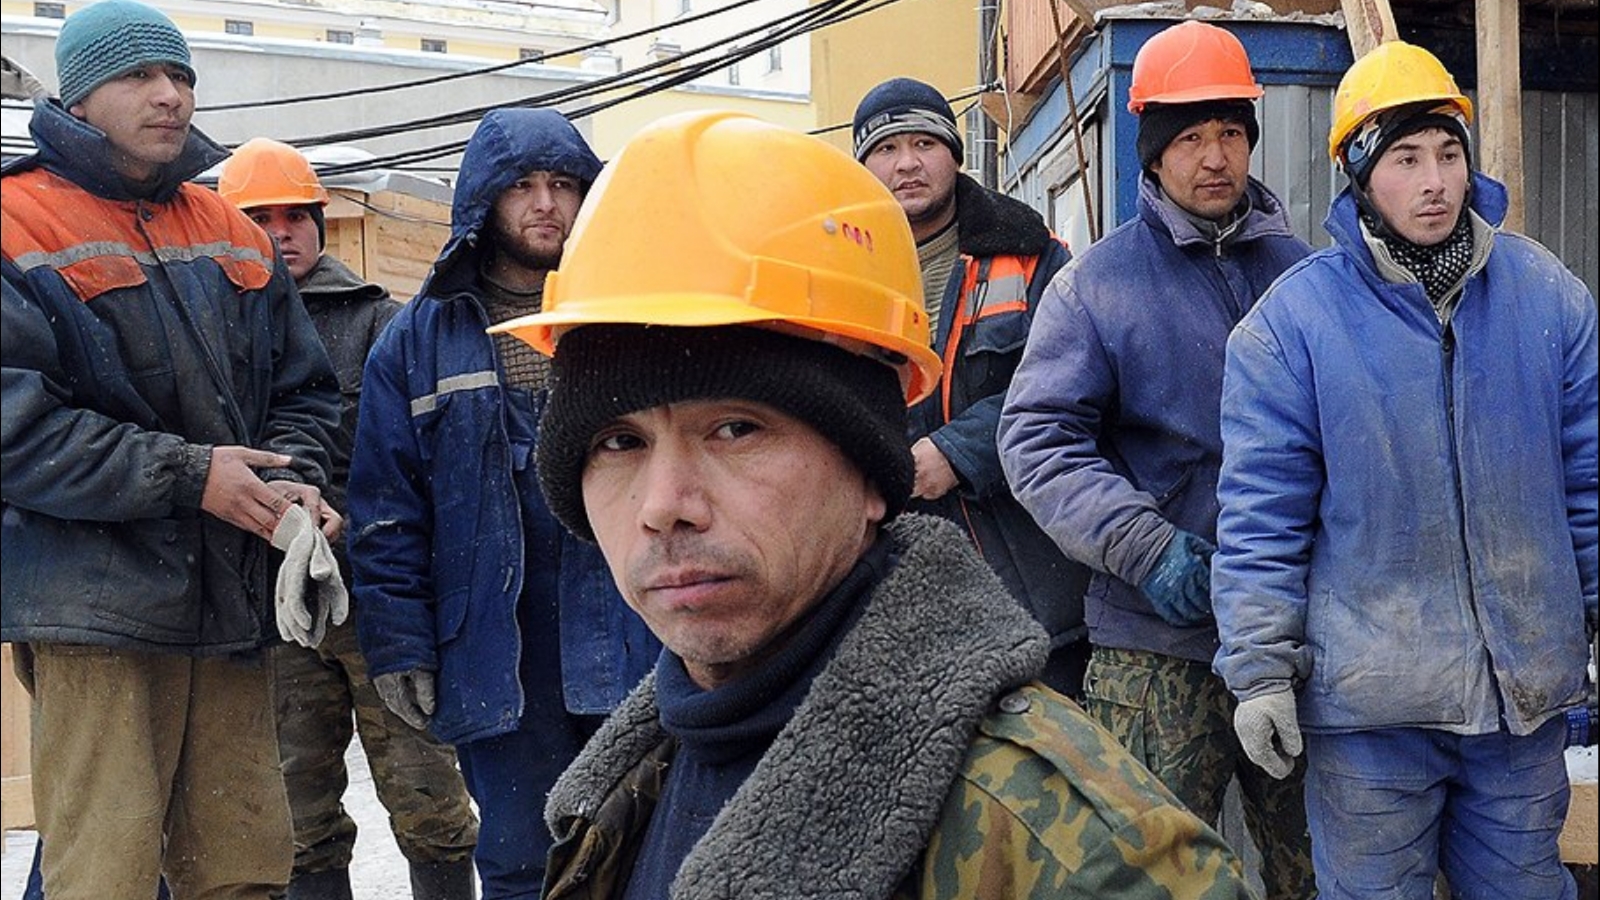 Таджикский рабочий. Мигранты строители. Гастарбайтеры на стройке. Узбеки на стройке. Строитель гастарбайтер.